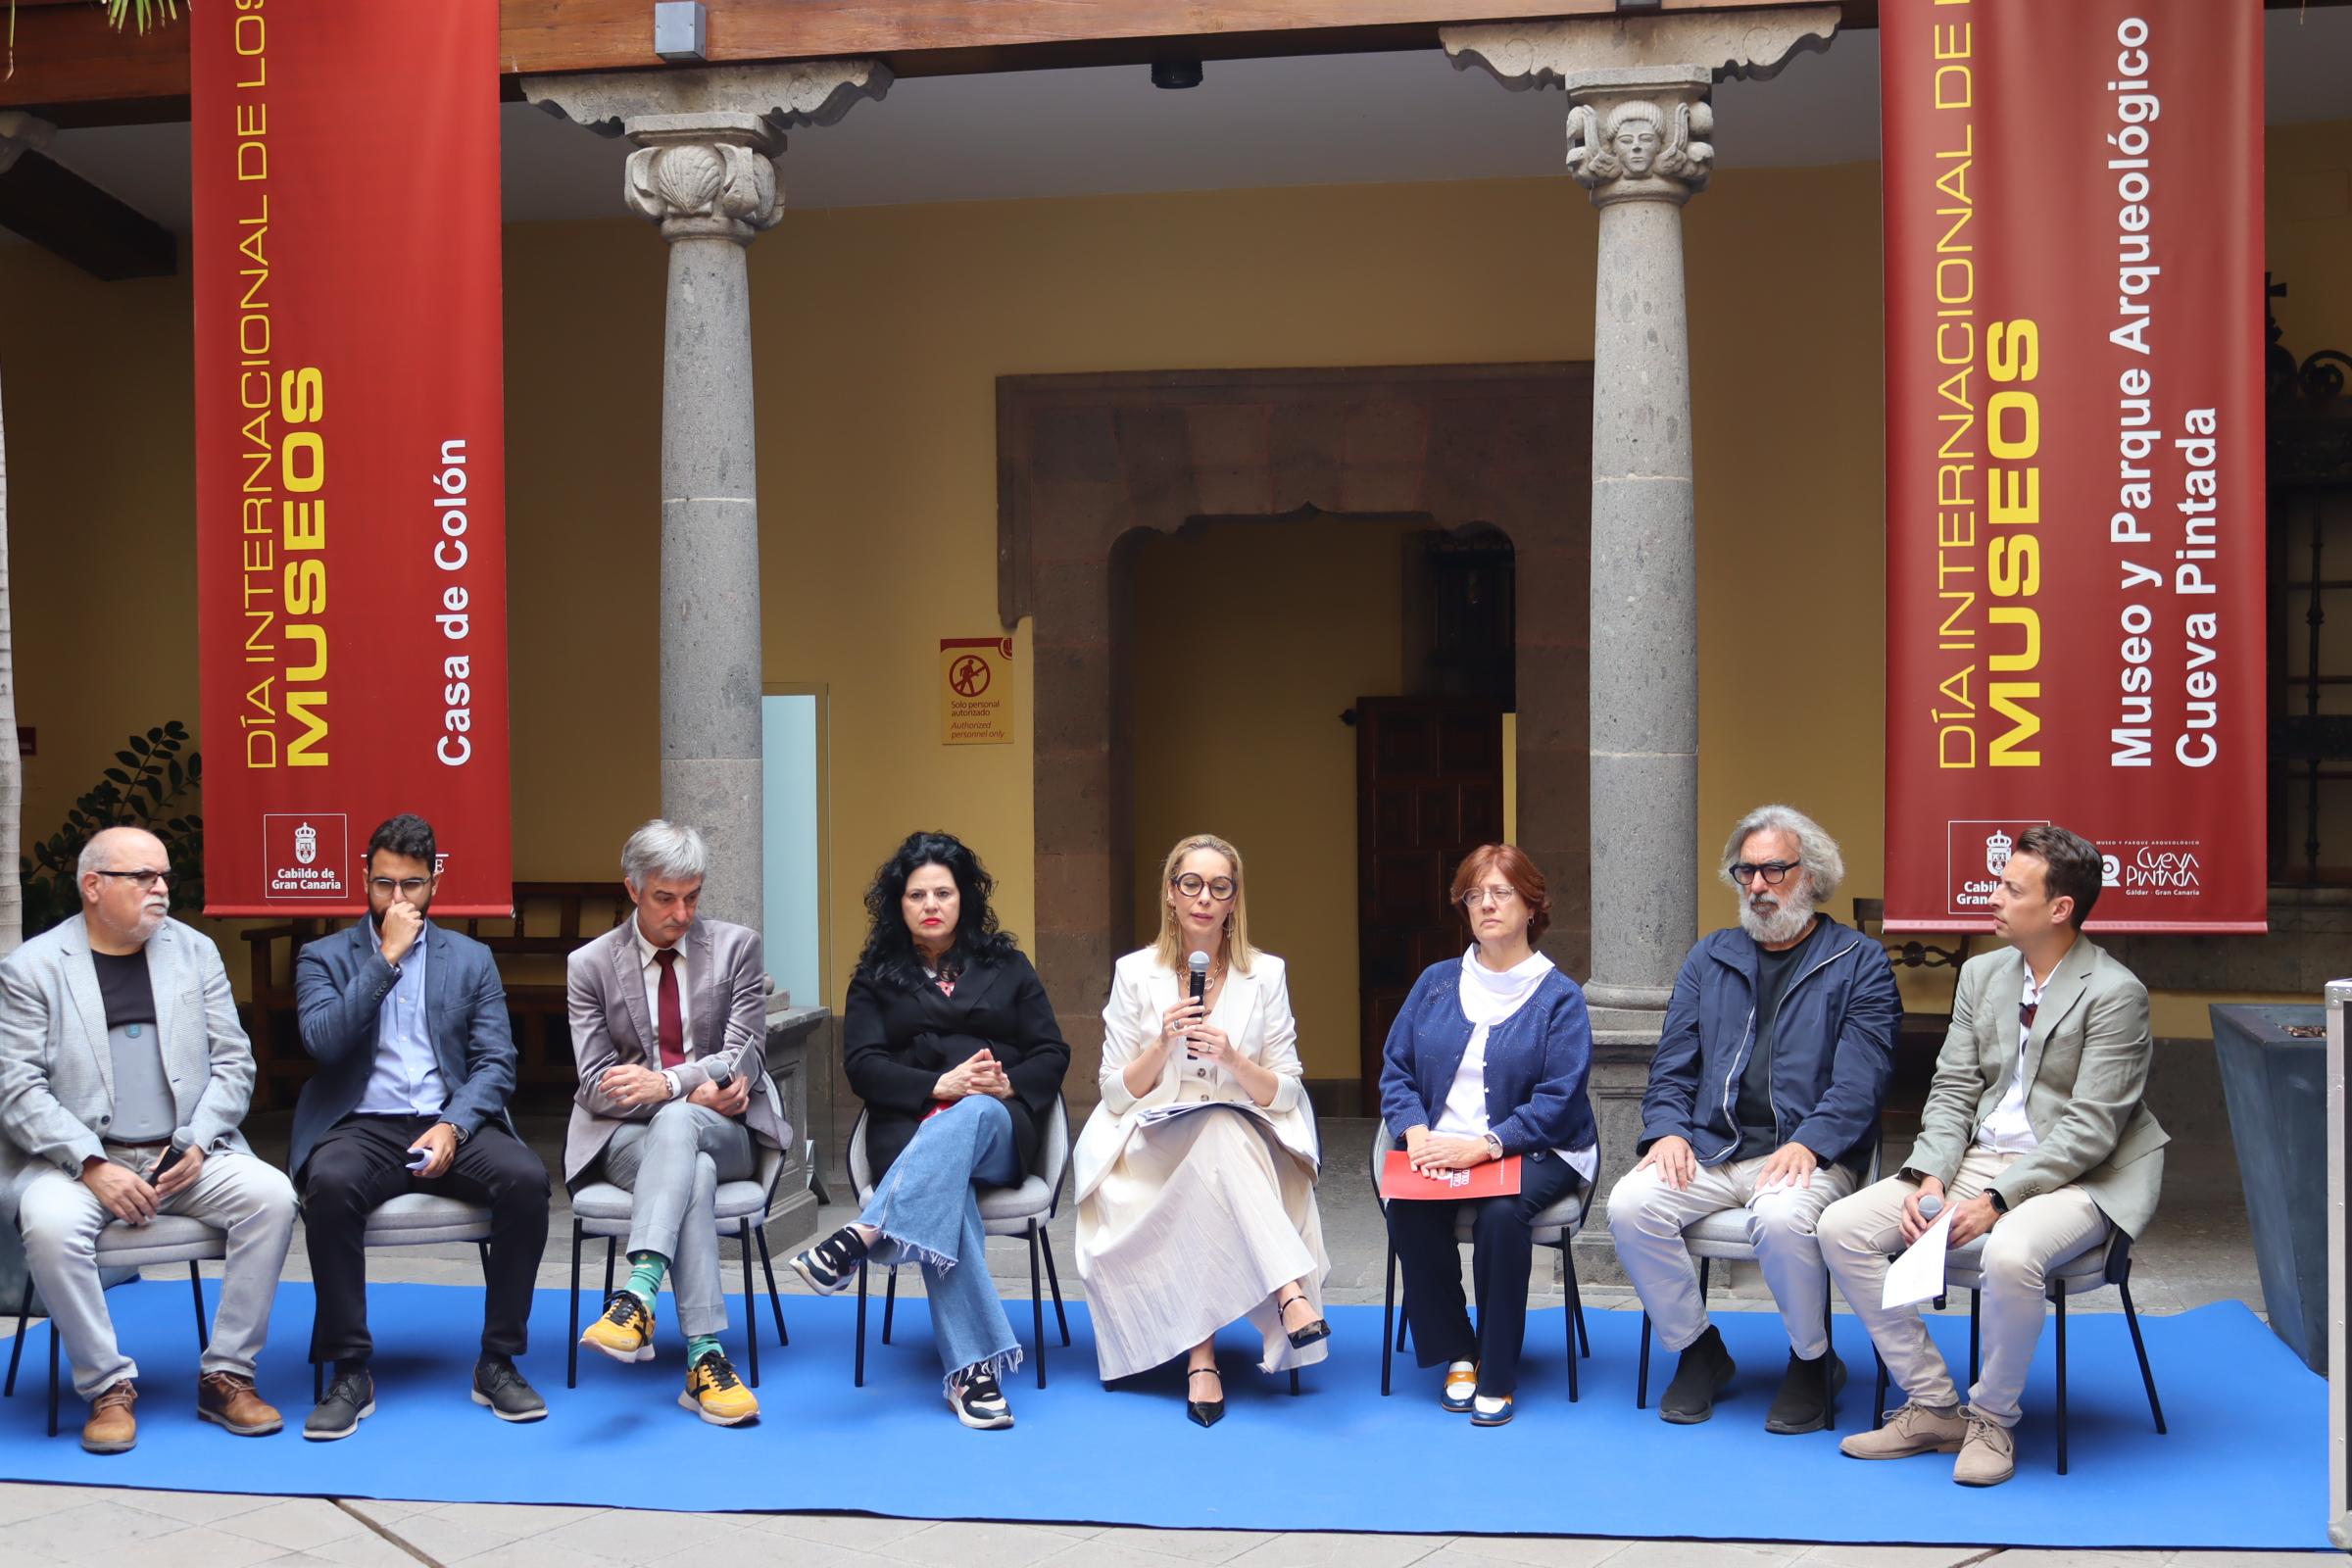 La educación y la investigación serán los ejes de la celebración del Día Internacional de los Museos en los centros culturales del Cabildo